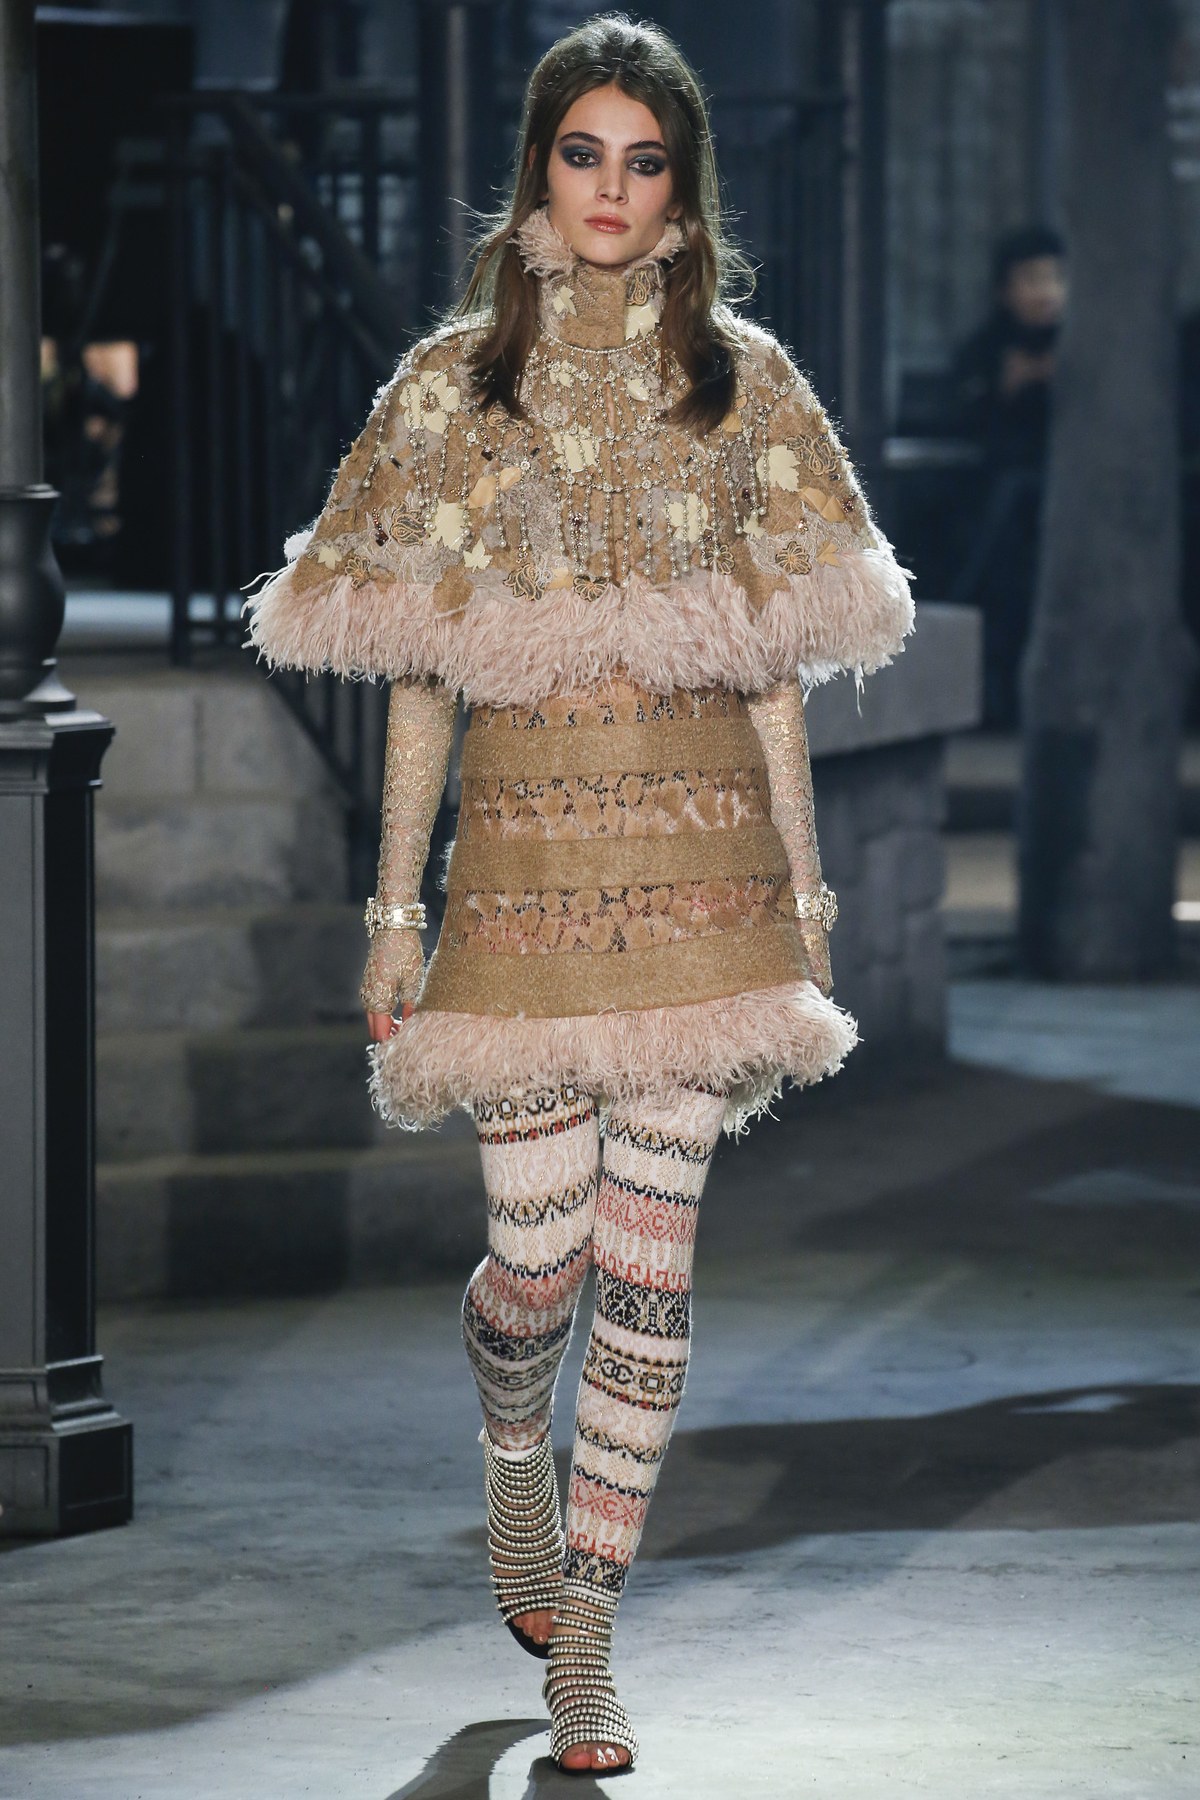 Chanel Paris Rome 2016 Lace & Feather Dress — The Posh Pop-Up